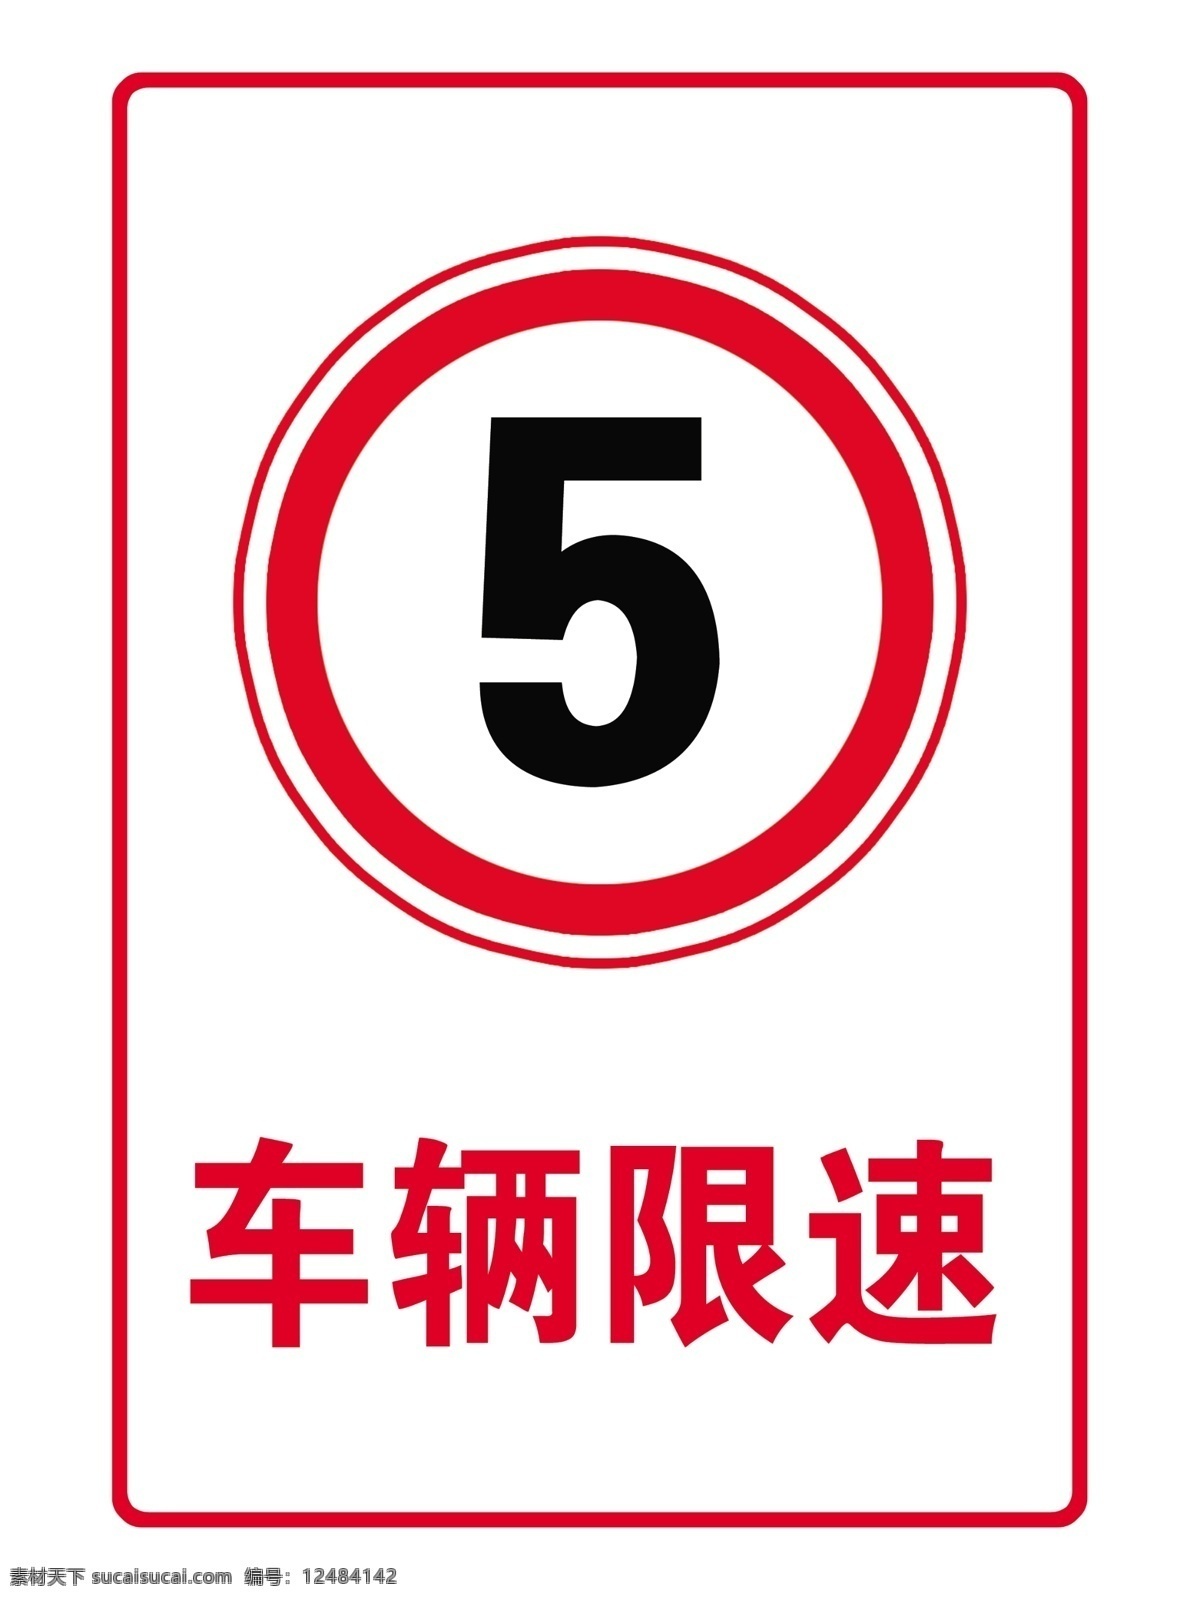 限速牌 限速行驶 5公里 圆形 标志 告知 牌 警示 分层